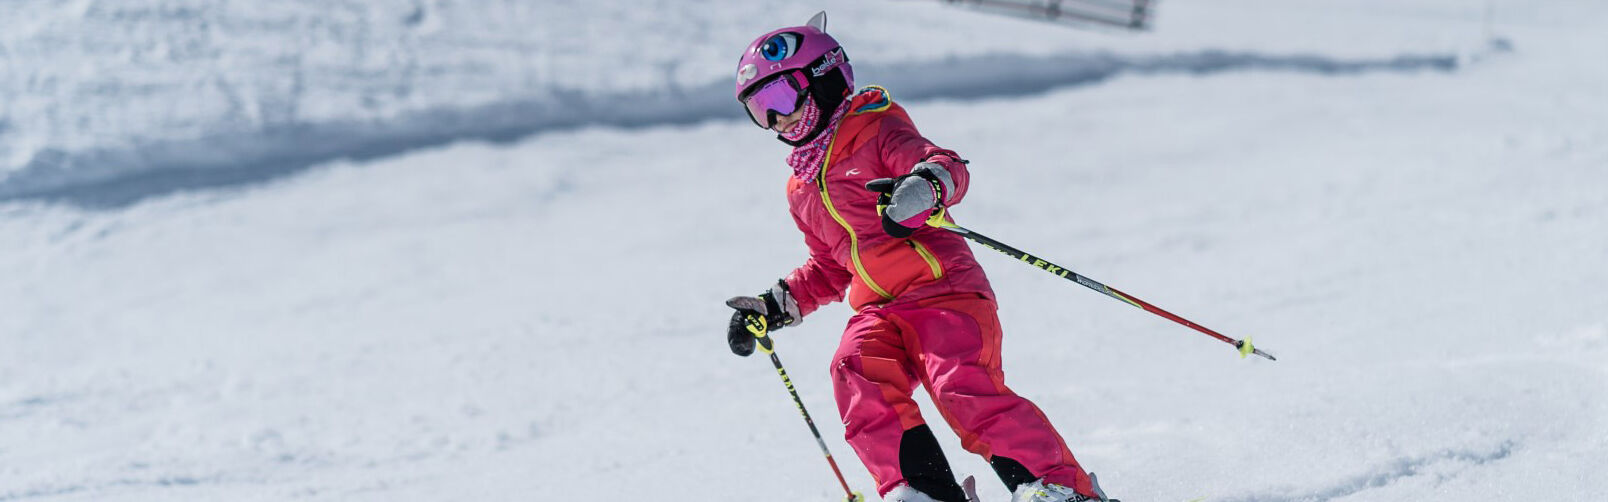 Skischool Flachau - speciaal opgeleide skileraren voor kinderen